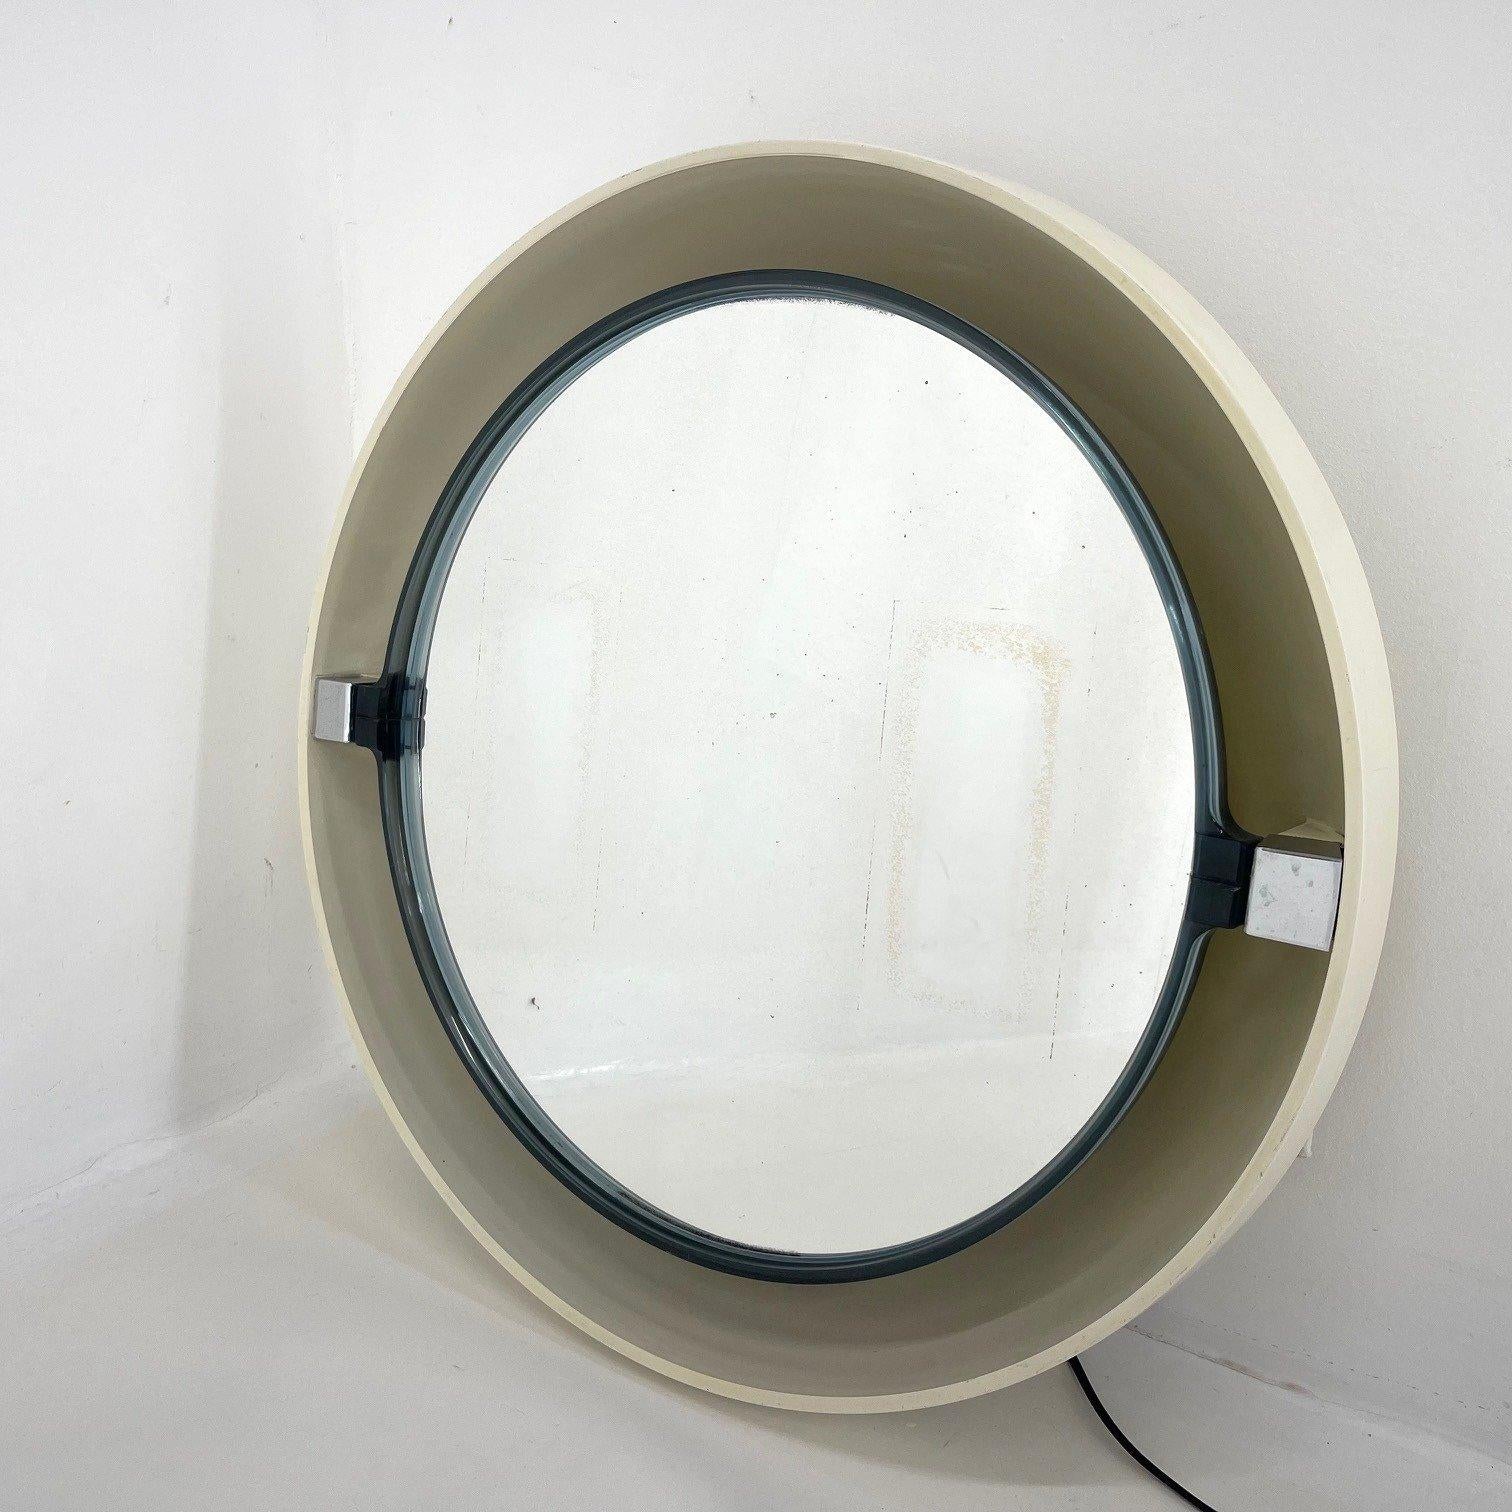 Magnifique miroir rétro-éclairé vintage. Le dos est en plastique, le miroir lui-même est réglable. Il y a un cordon sur le côté pour allumer et éteindre la lumière. Il y a quelques signes d'utilisation (voir photo).